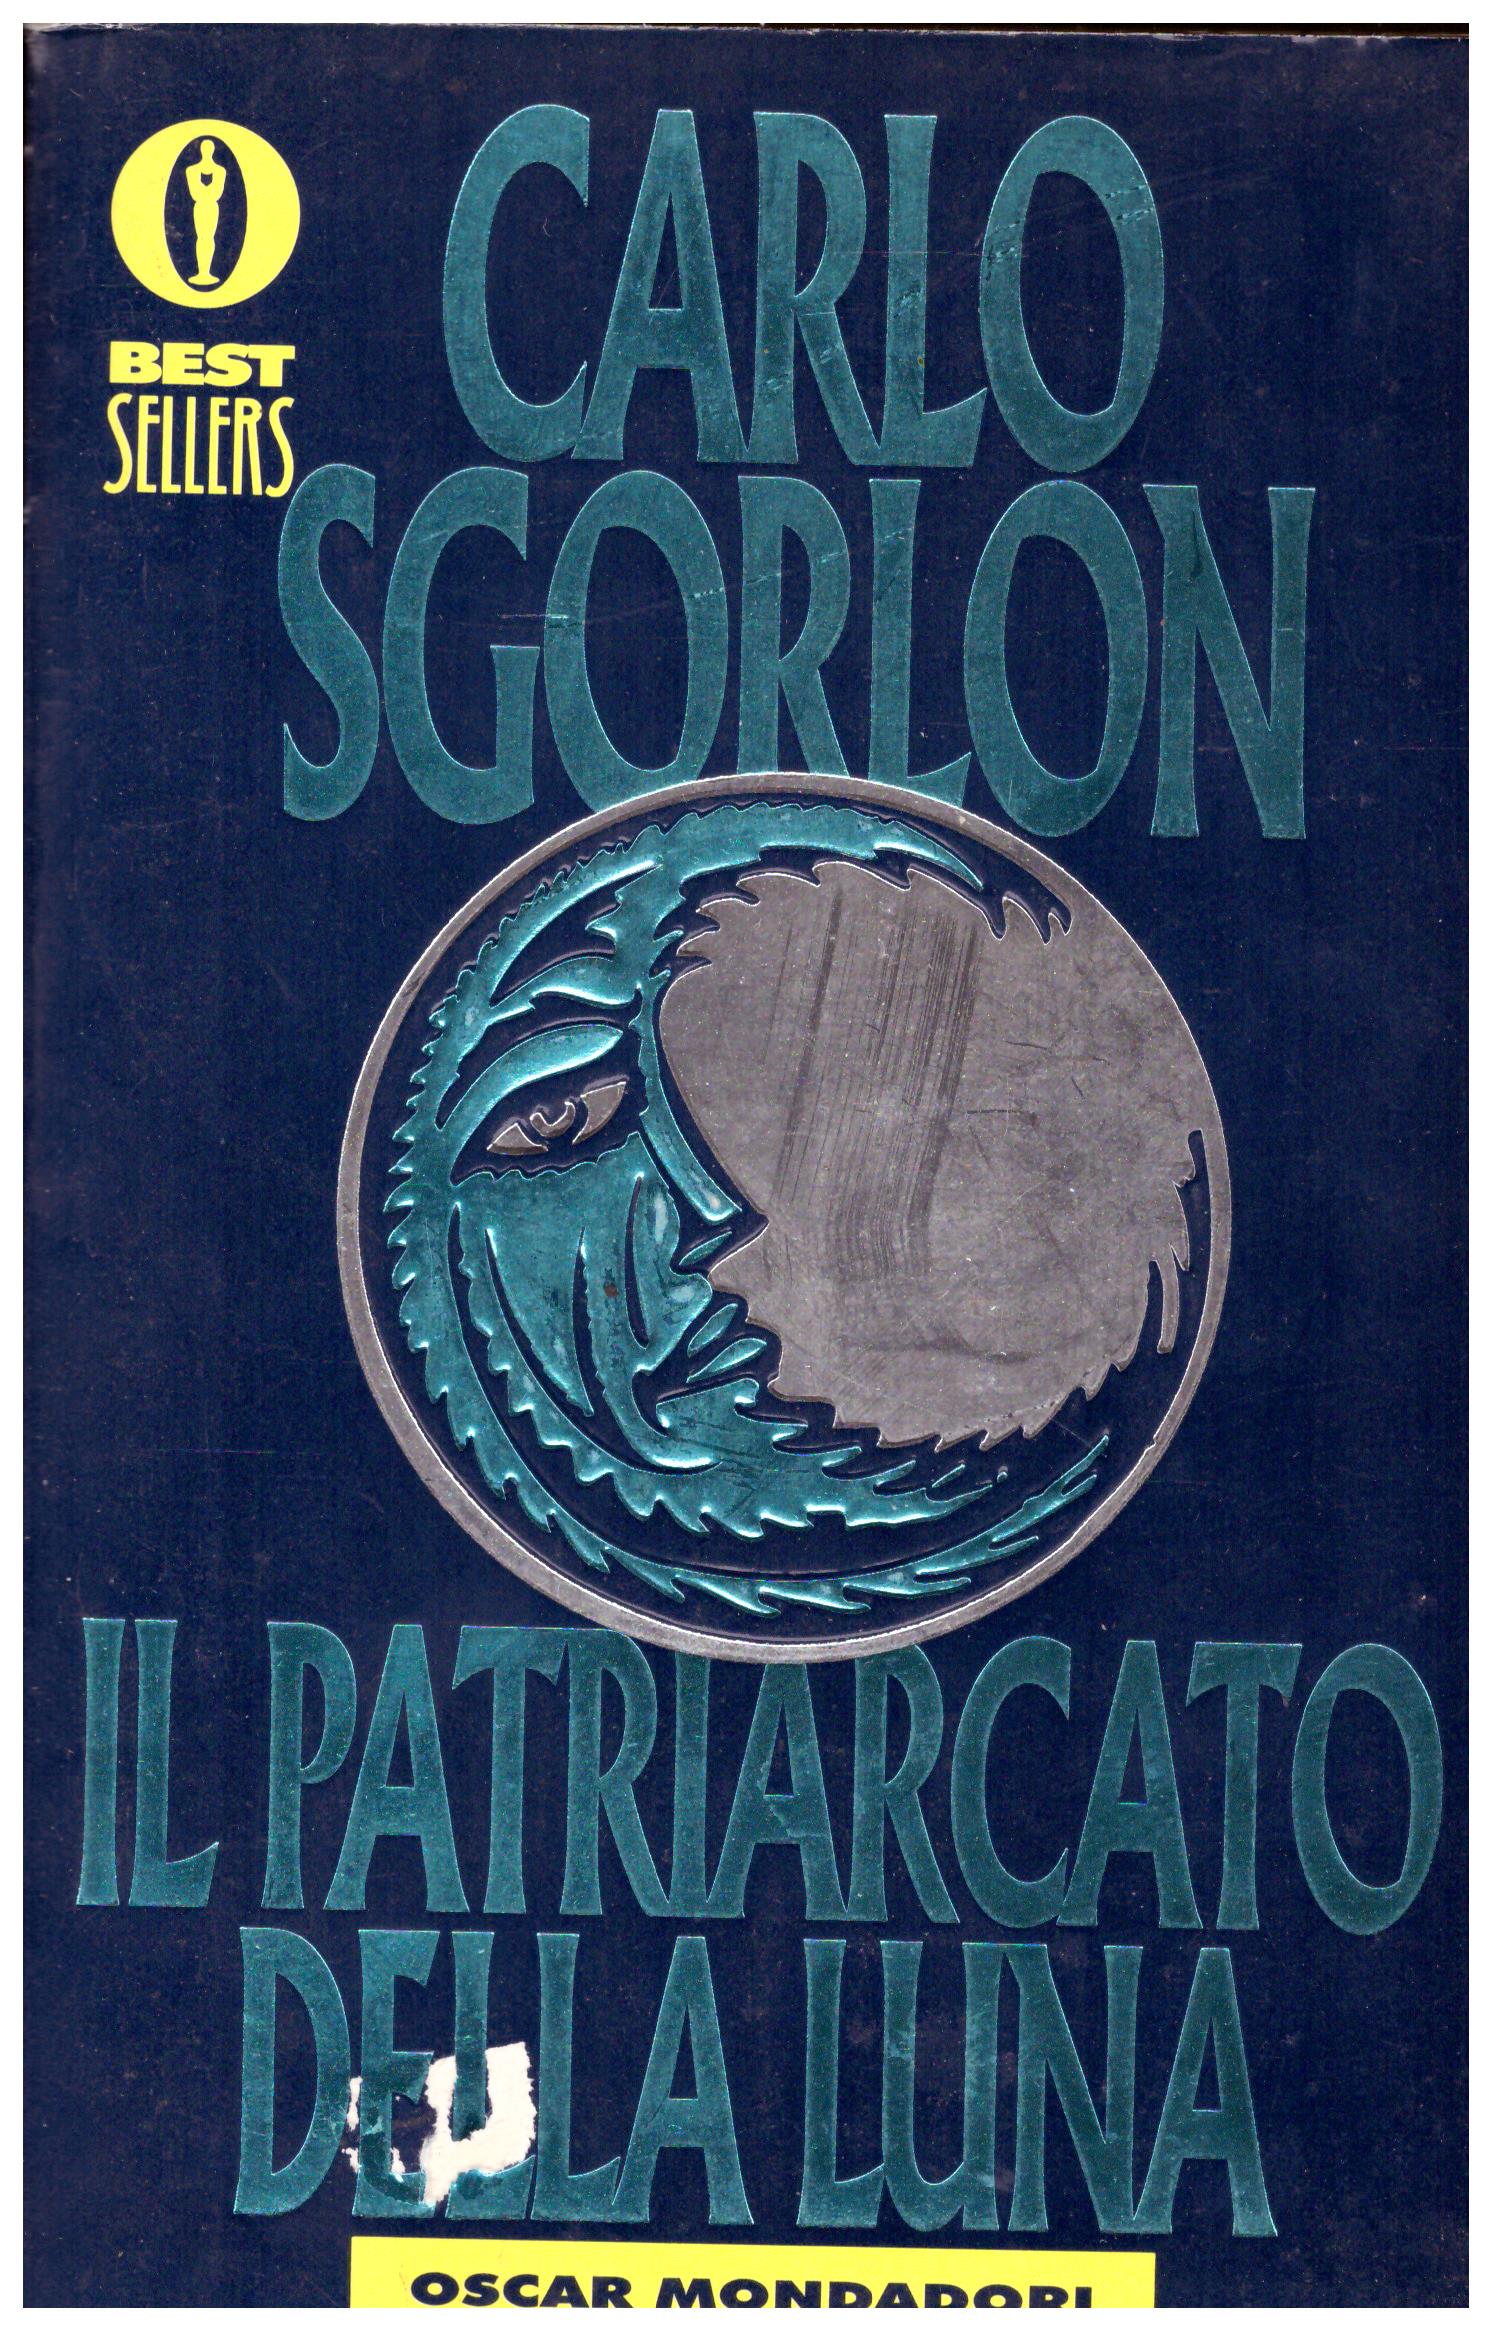 Titolo: Il patriarcato della luna Autore: Carlo Sgorlon Editore: mondadori, 1991